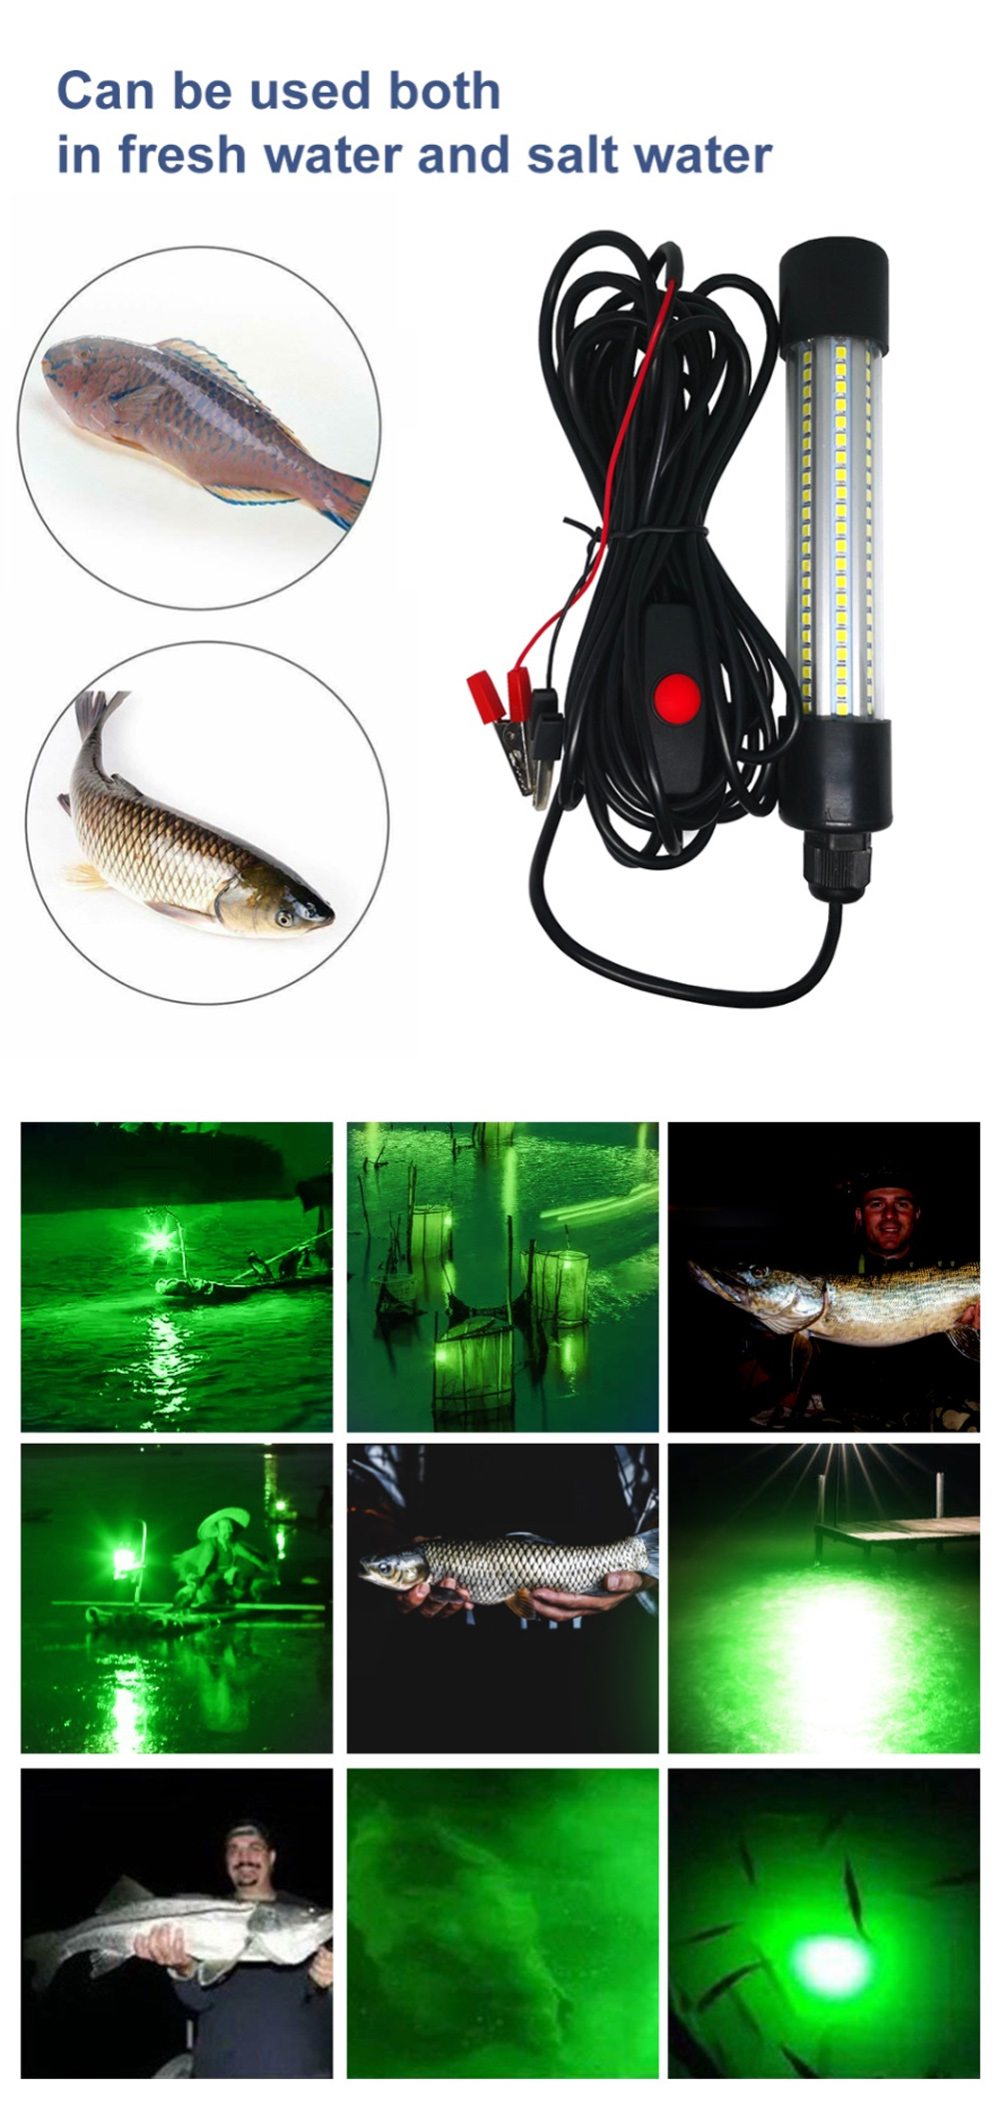 ZANLURE-13W-Underwater-Fishing-Light-Fish-Lure-Bait-Finder-Lamp-Attracts-Prawns-Squid-Krill-Finder-L-1843911-2